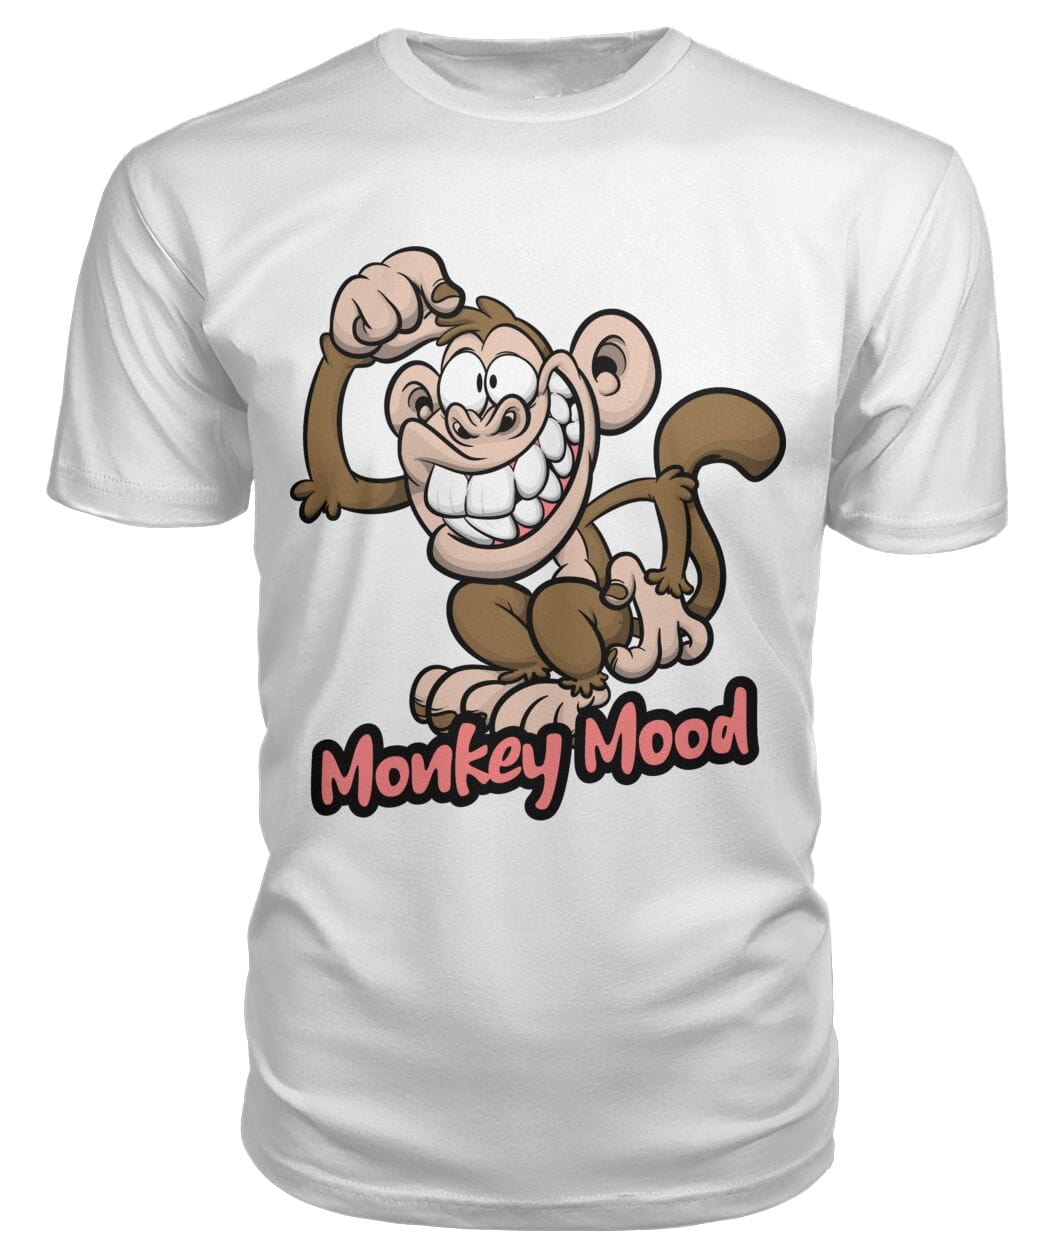 Tricou Monkey mood